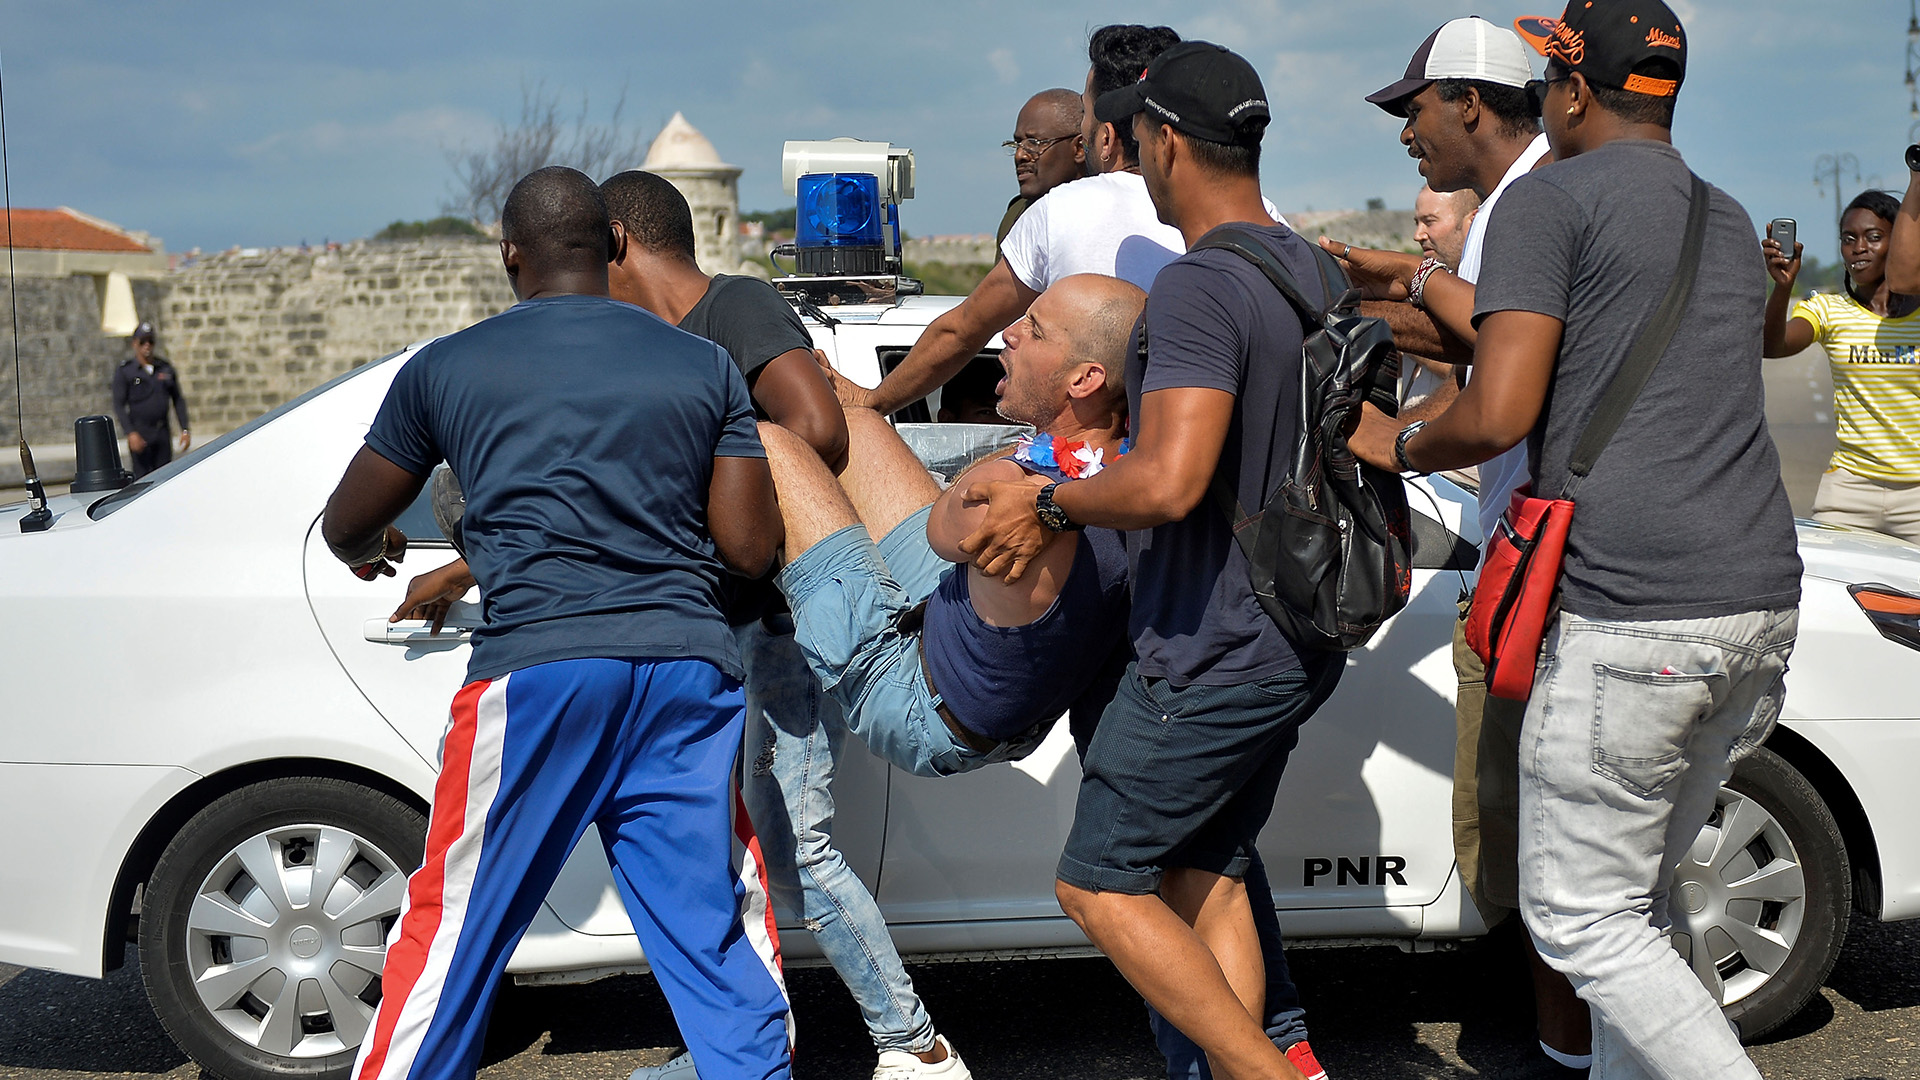 El régimen cubano arresta a manifestantes en una manifestación gay en mayo de este año (Photo by YAMIL LAGE / AFP)